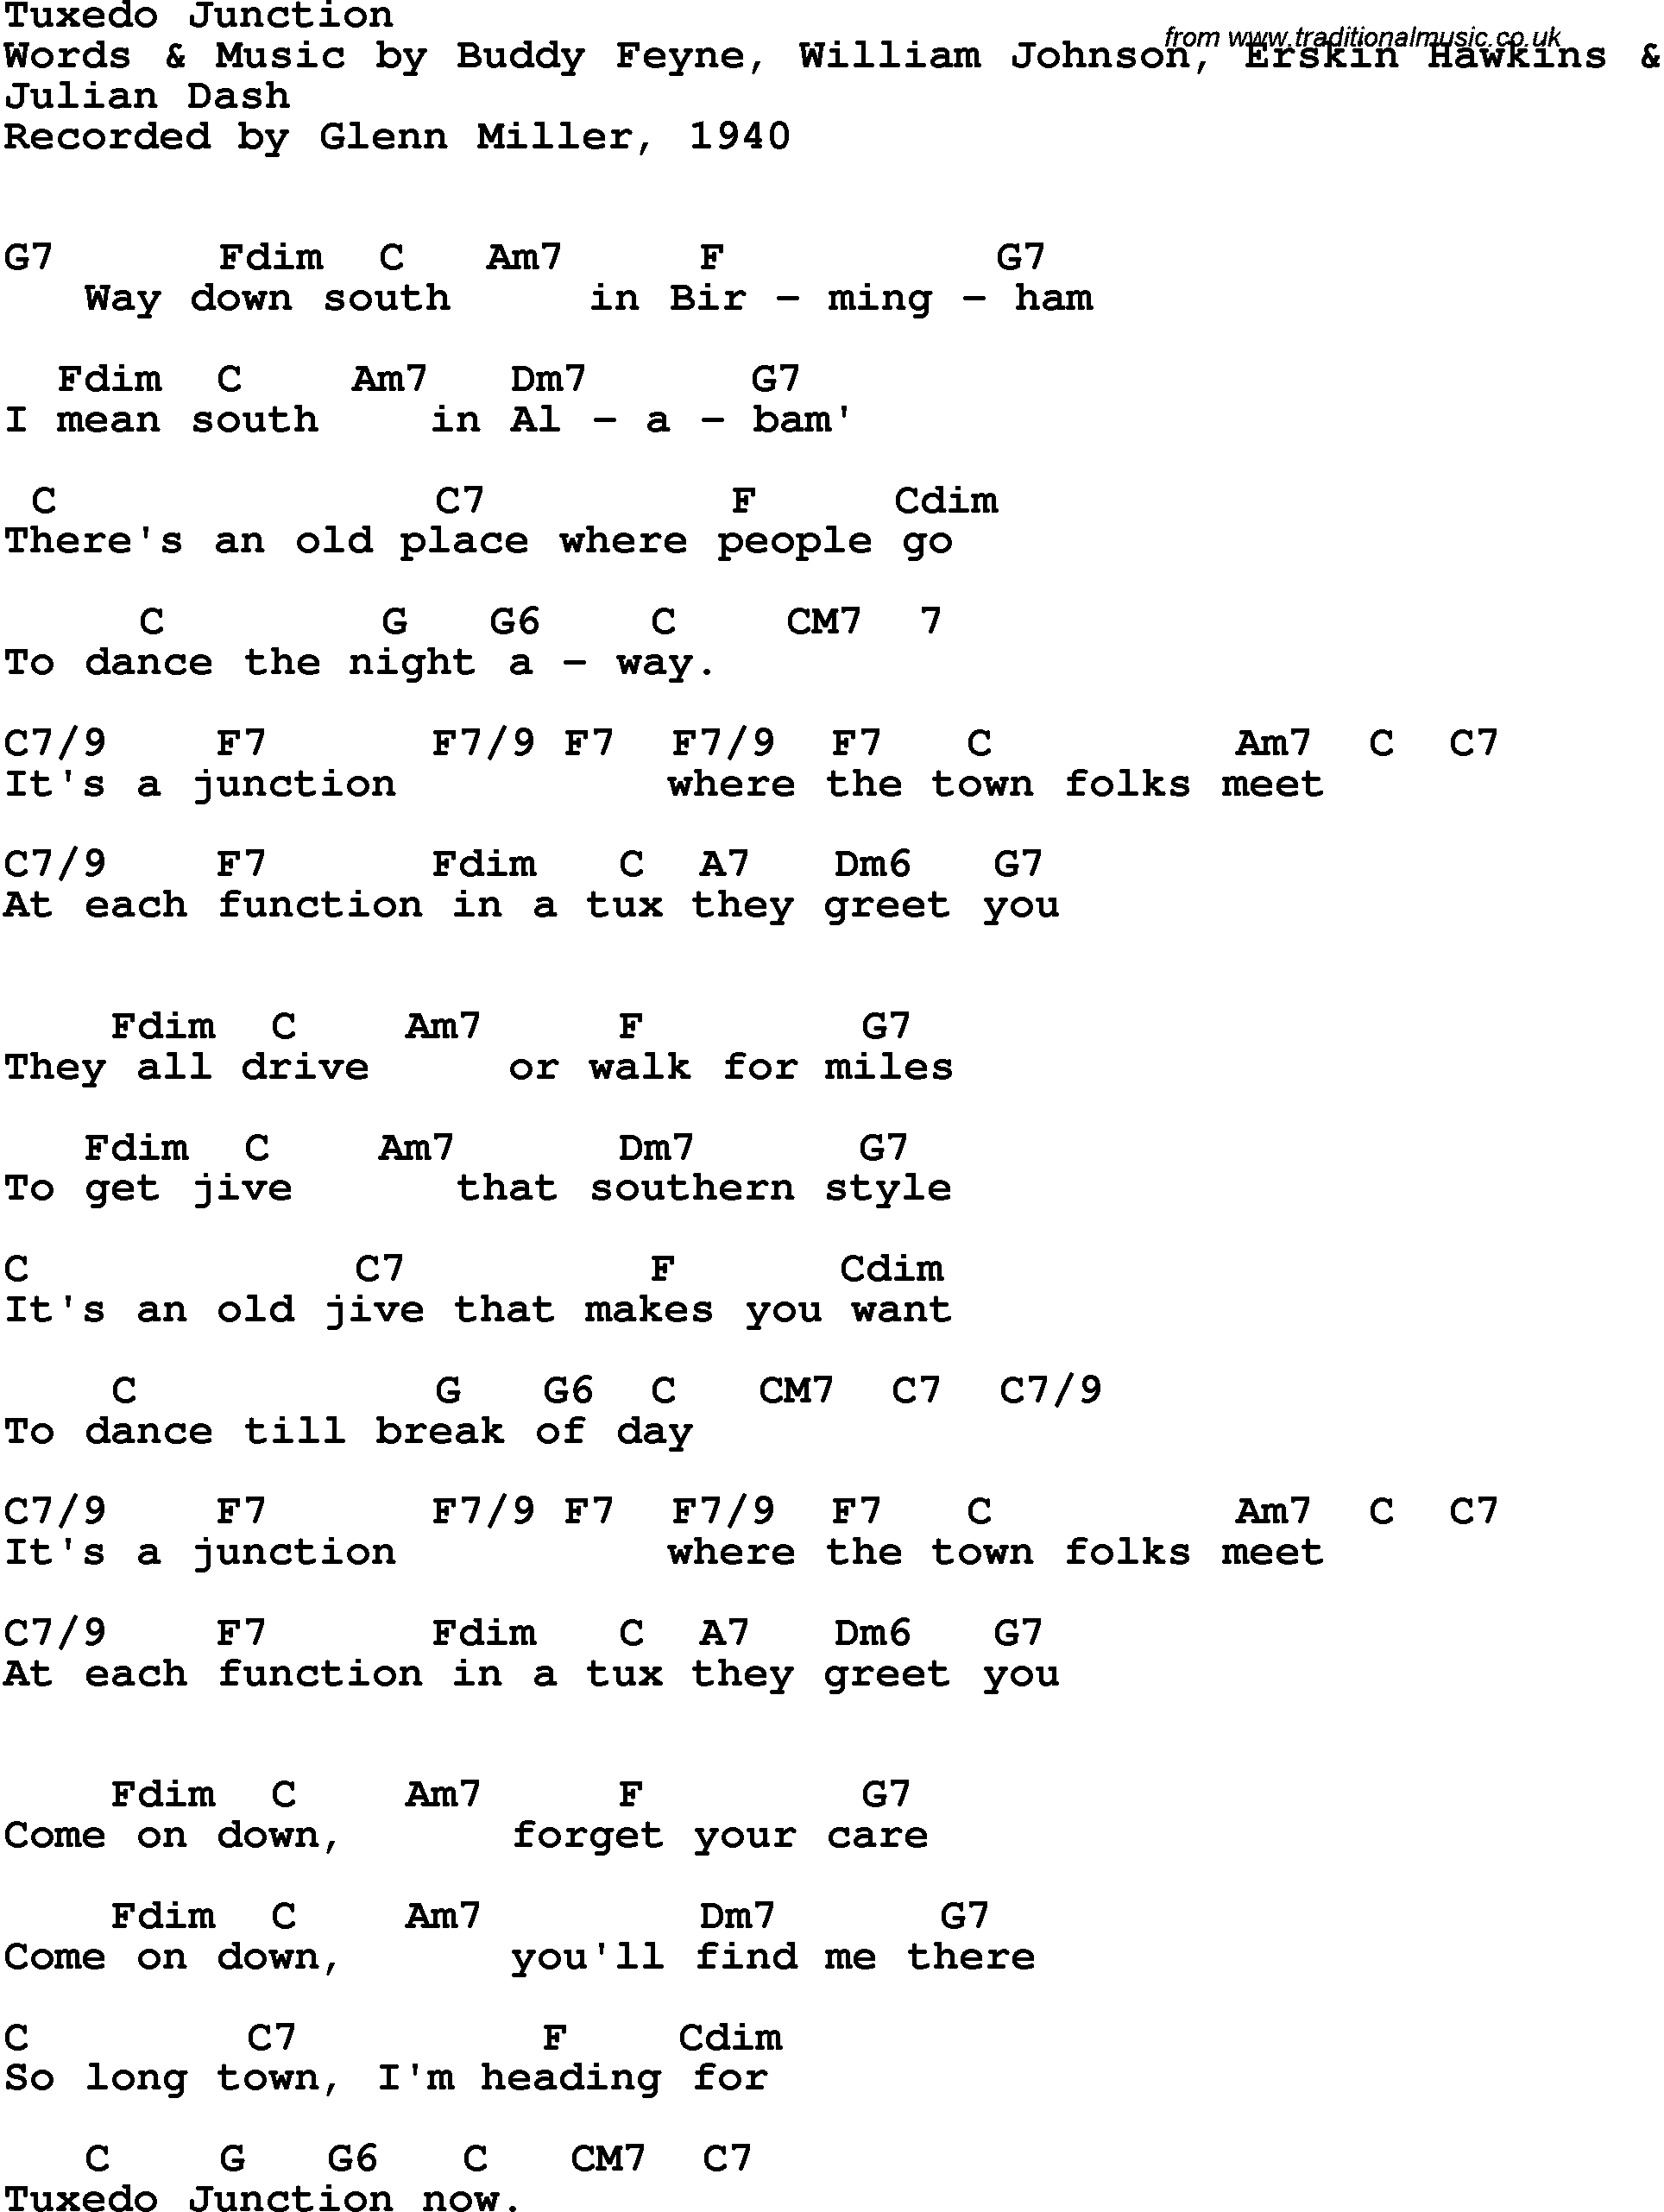 Song Lyrics with guitar chords for Tuxedo Junction - Glenn Miller, 1940